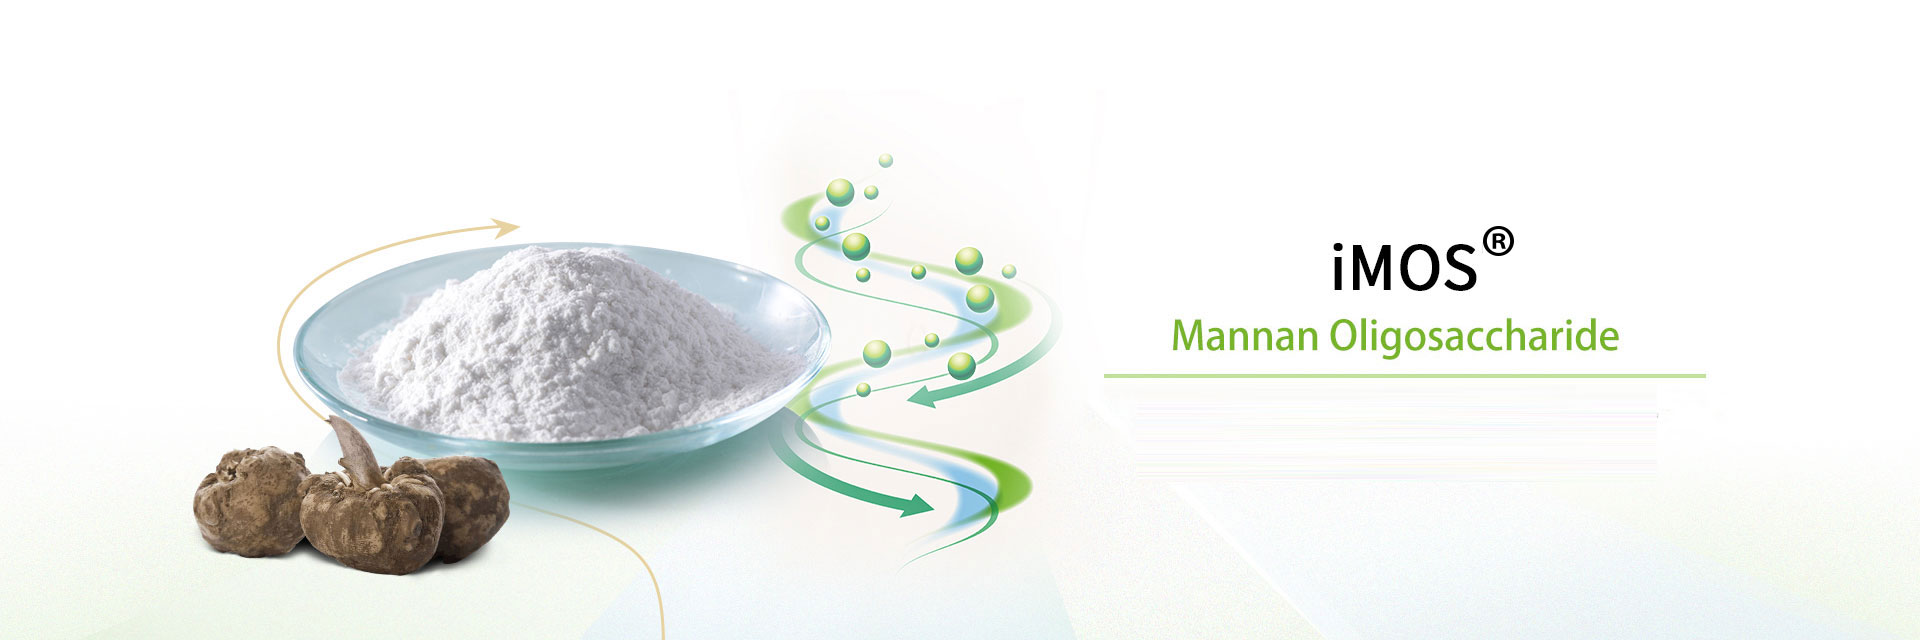 iMOS®（mannan oligosaccharide）